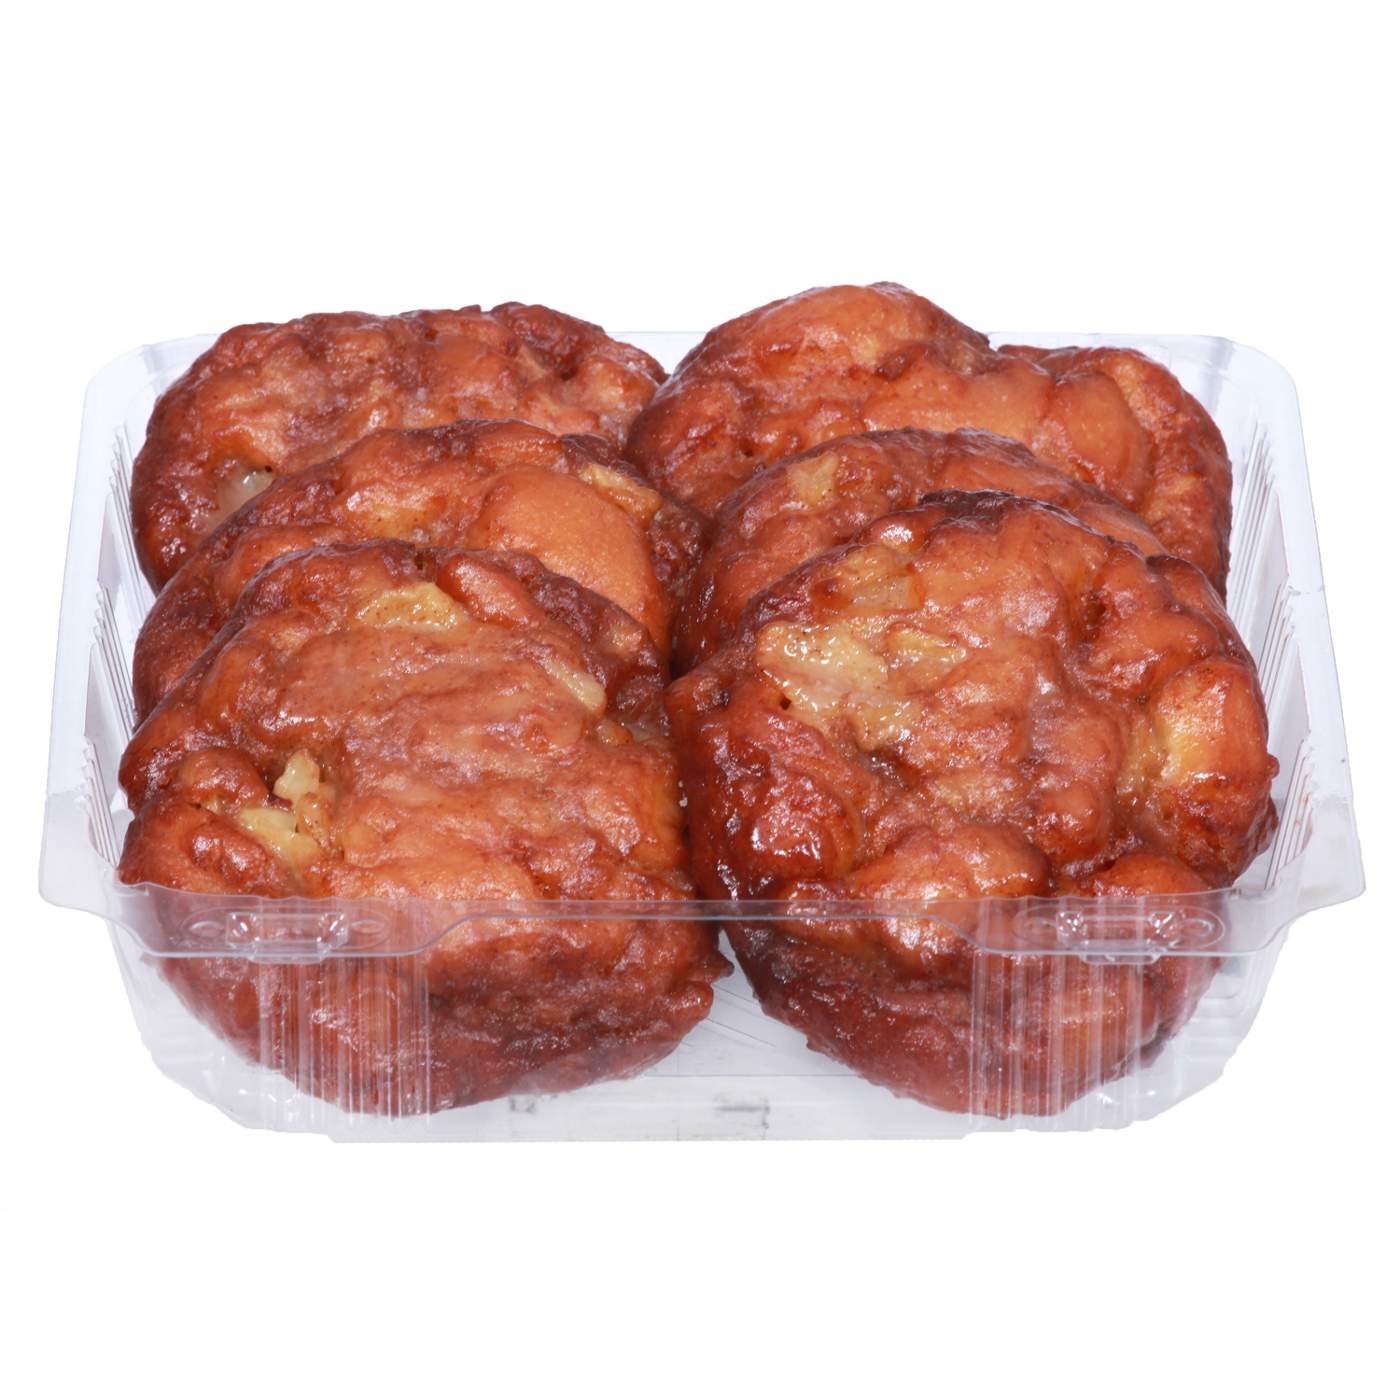 H-E-B Bakery Glazed Apple Fritter Donuts; image 1 of 2